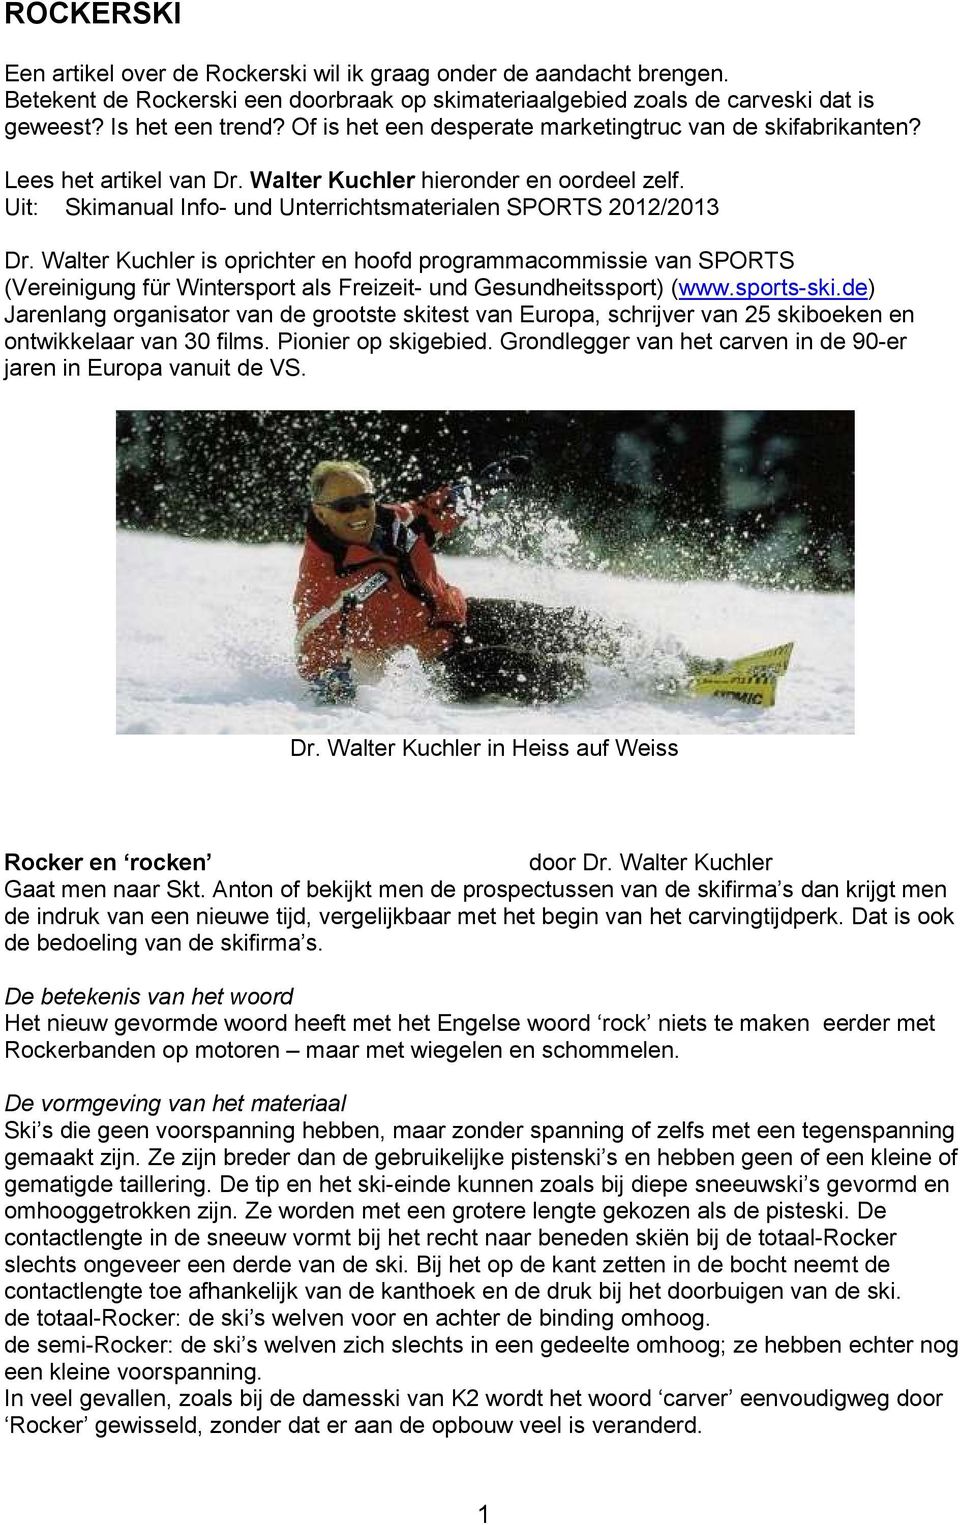 Walter Kuchler is oprichter en hoofd programmacommissie van SPORTS (Vereinigung für Wintersport als Freizeit- und Gesundheitssport) (www.sports-ski.